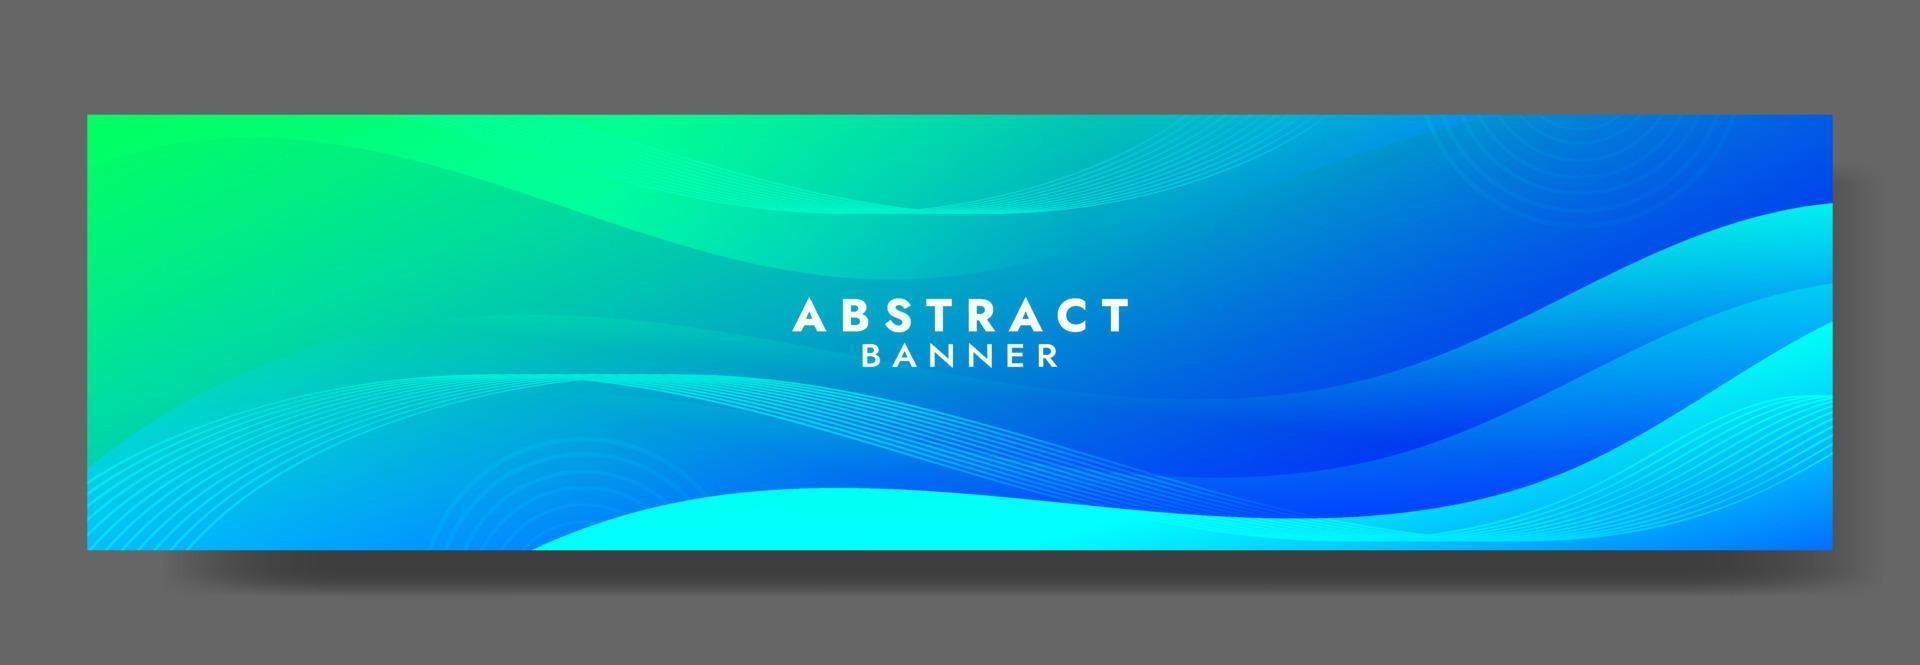 plantilla de banner de onda de fluido azul abstracto vector